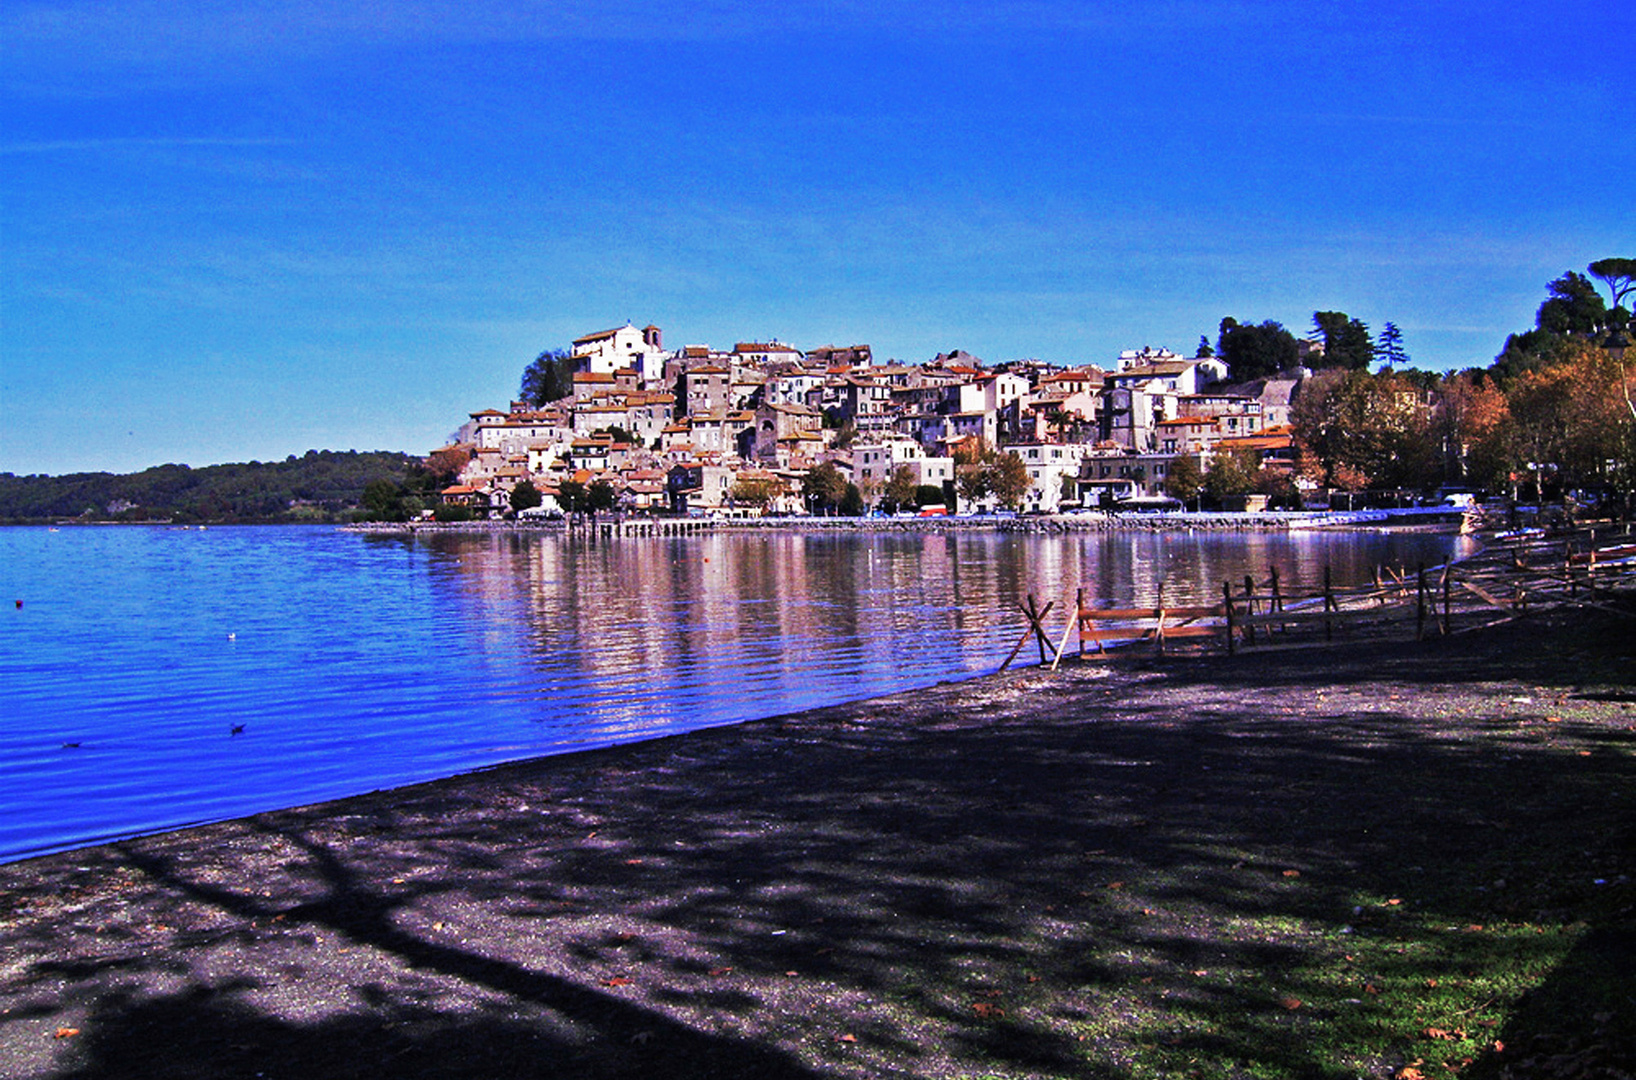 L'autunno ad Anguillara Sabazia: il fascino del borgo che si specchia nel lago (di Bracciano)